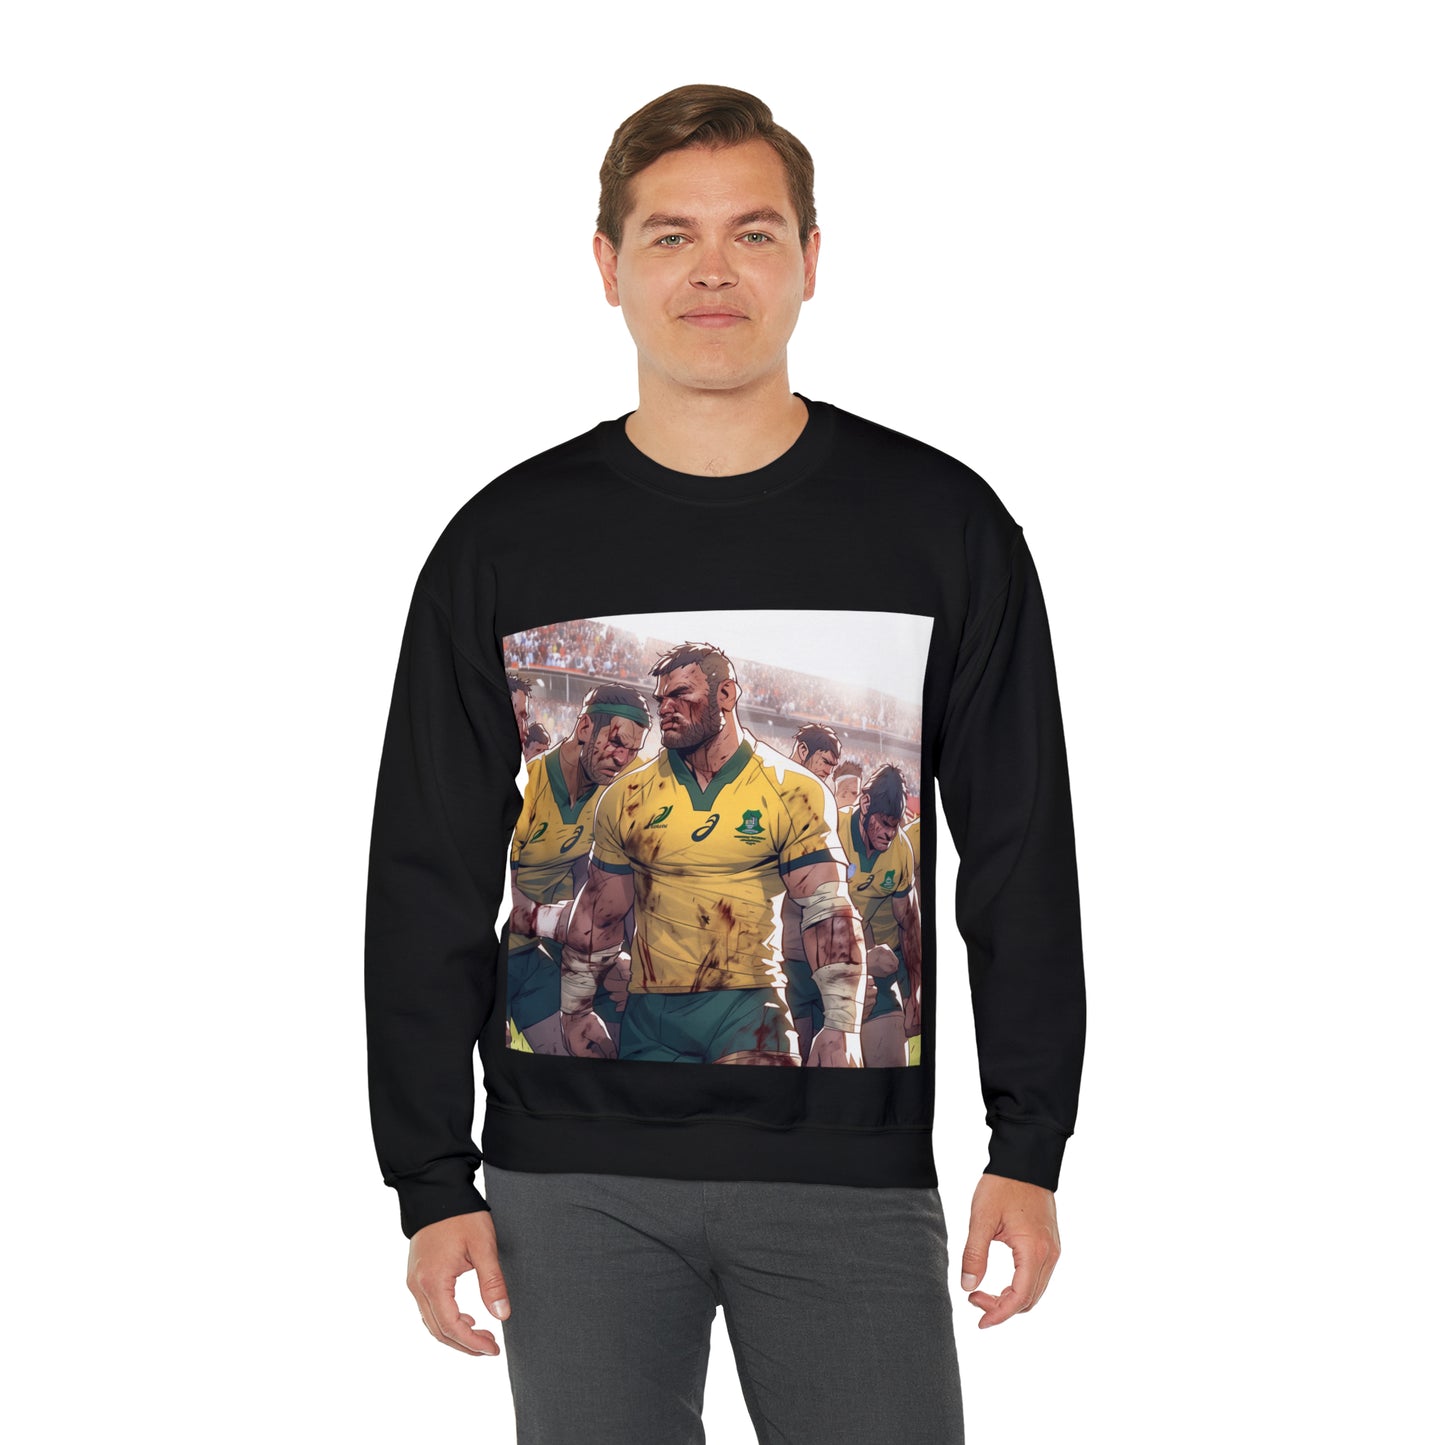 Aussie Aussie Aussie - black sweatshirt